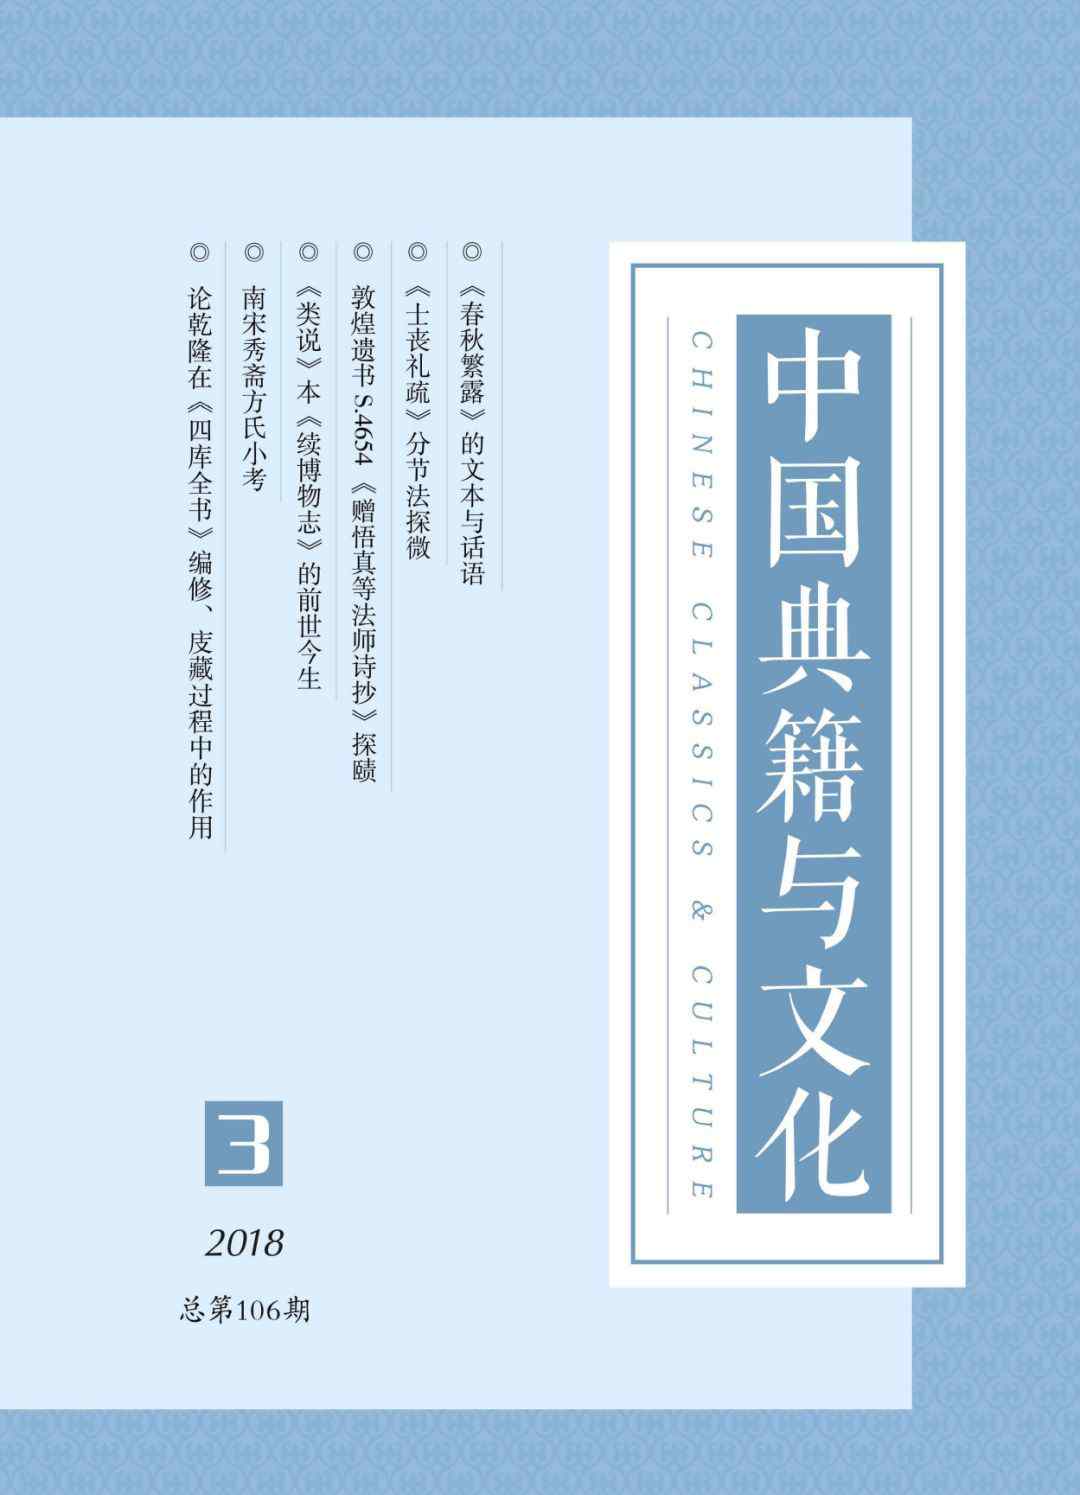 续博物志 《中国典籍与文化》2018年第3期目录与摘要